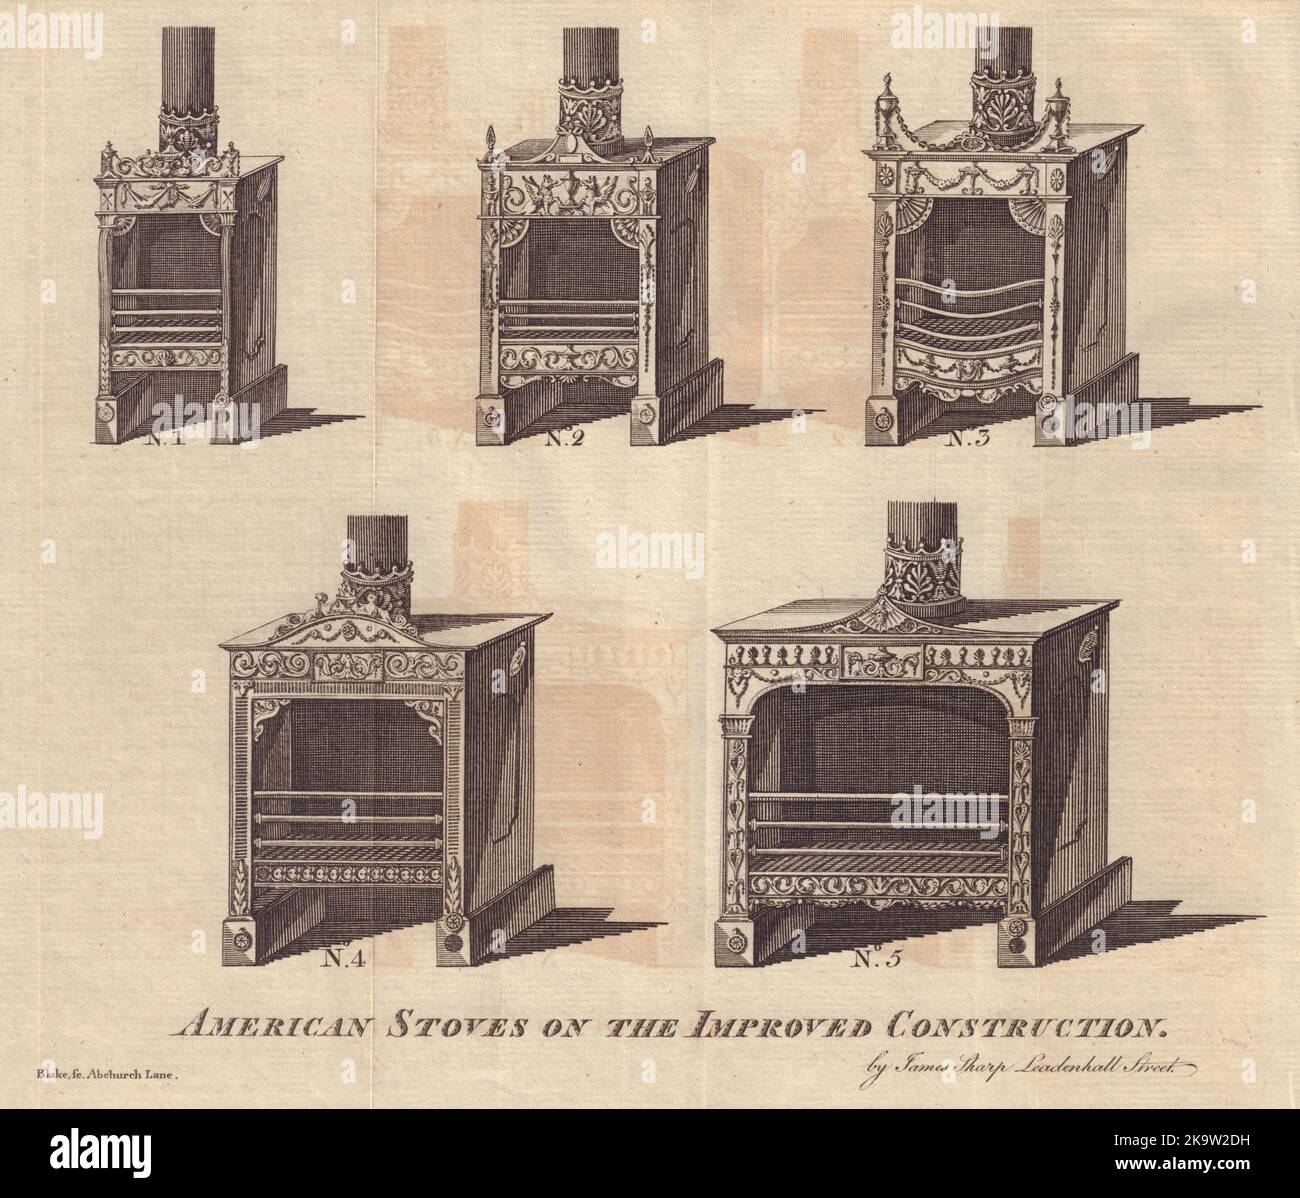 Estufas americanas en la construcción mejorada inventada por Franklin 1781 impresión Foto de stock